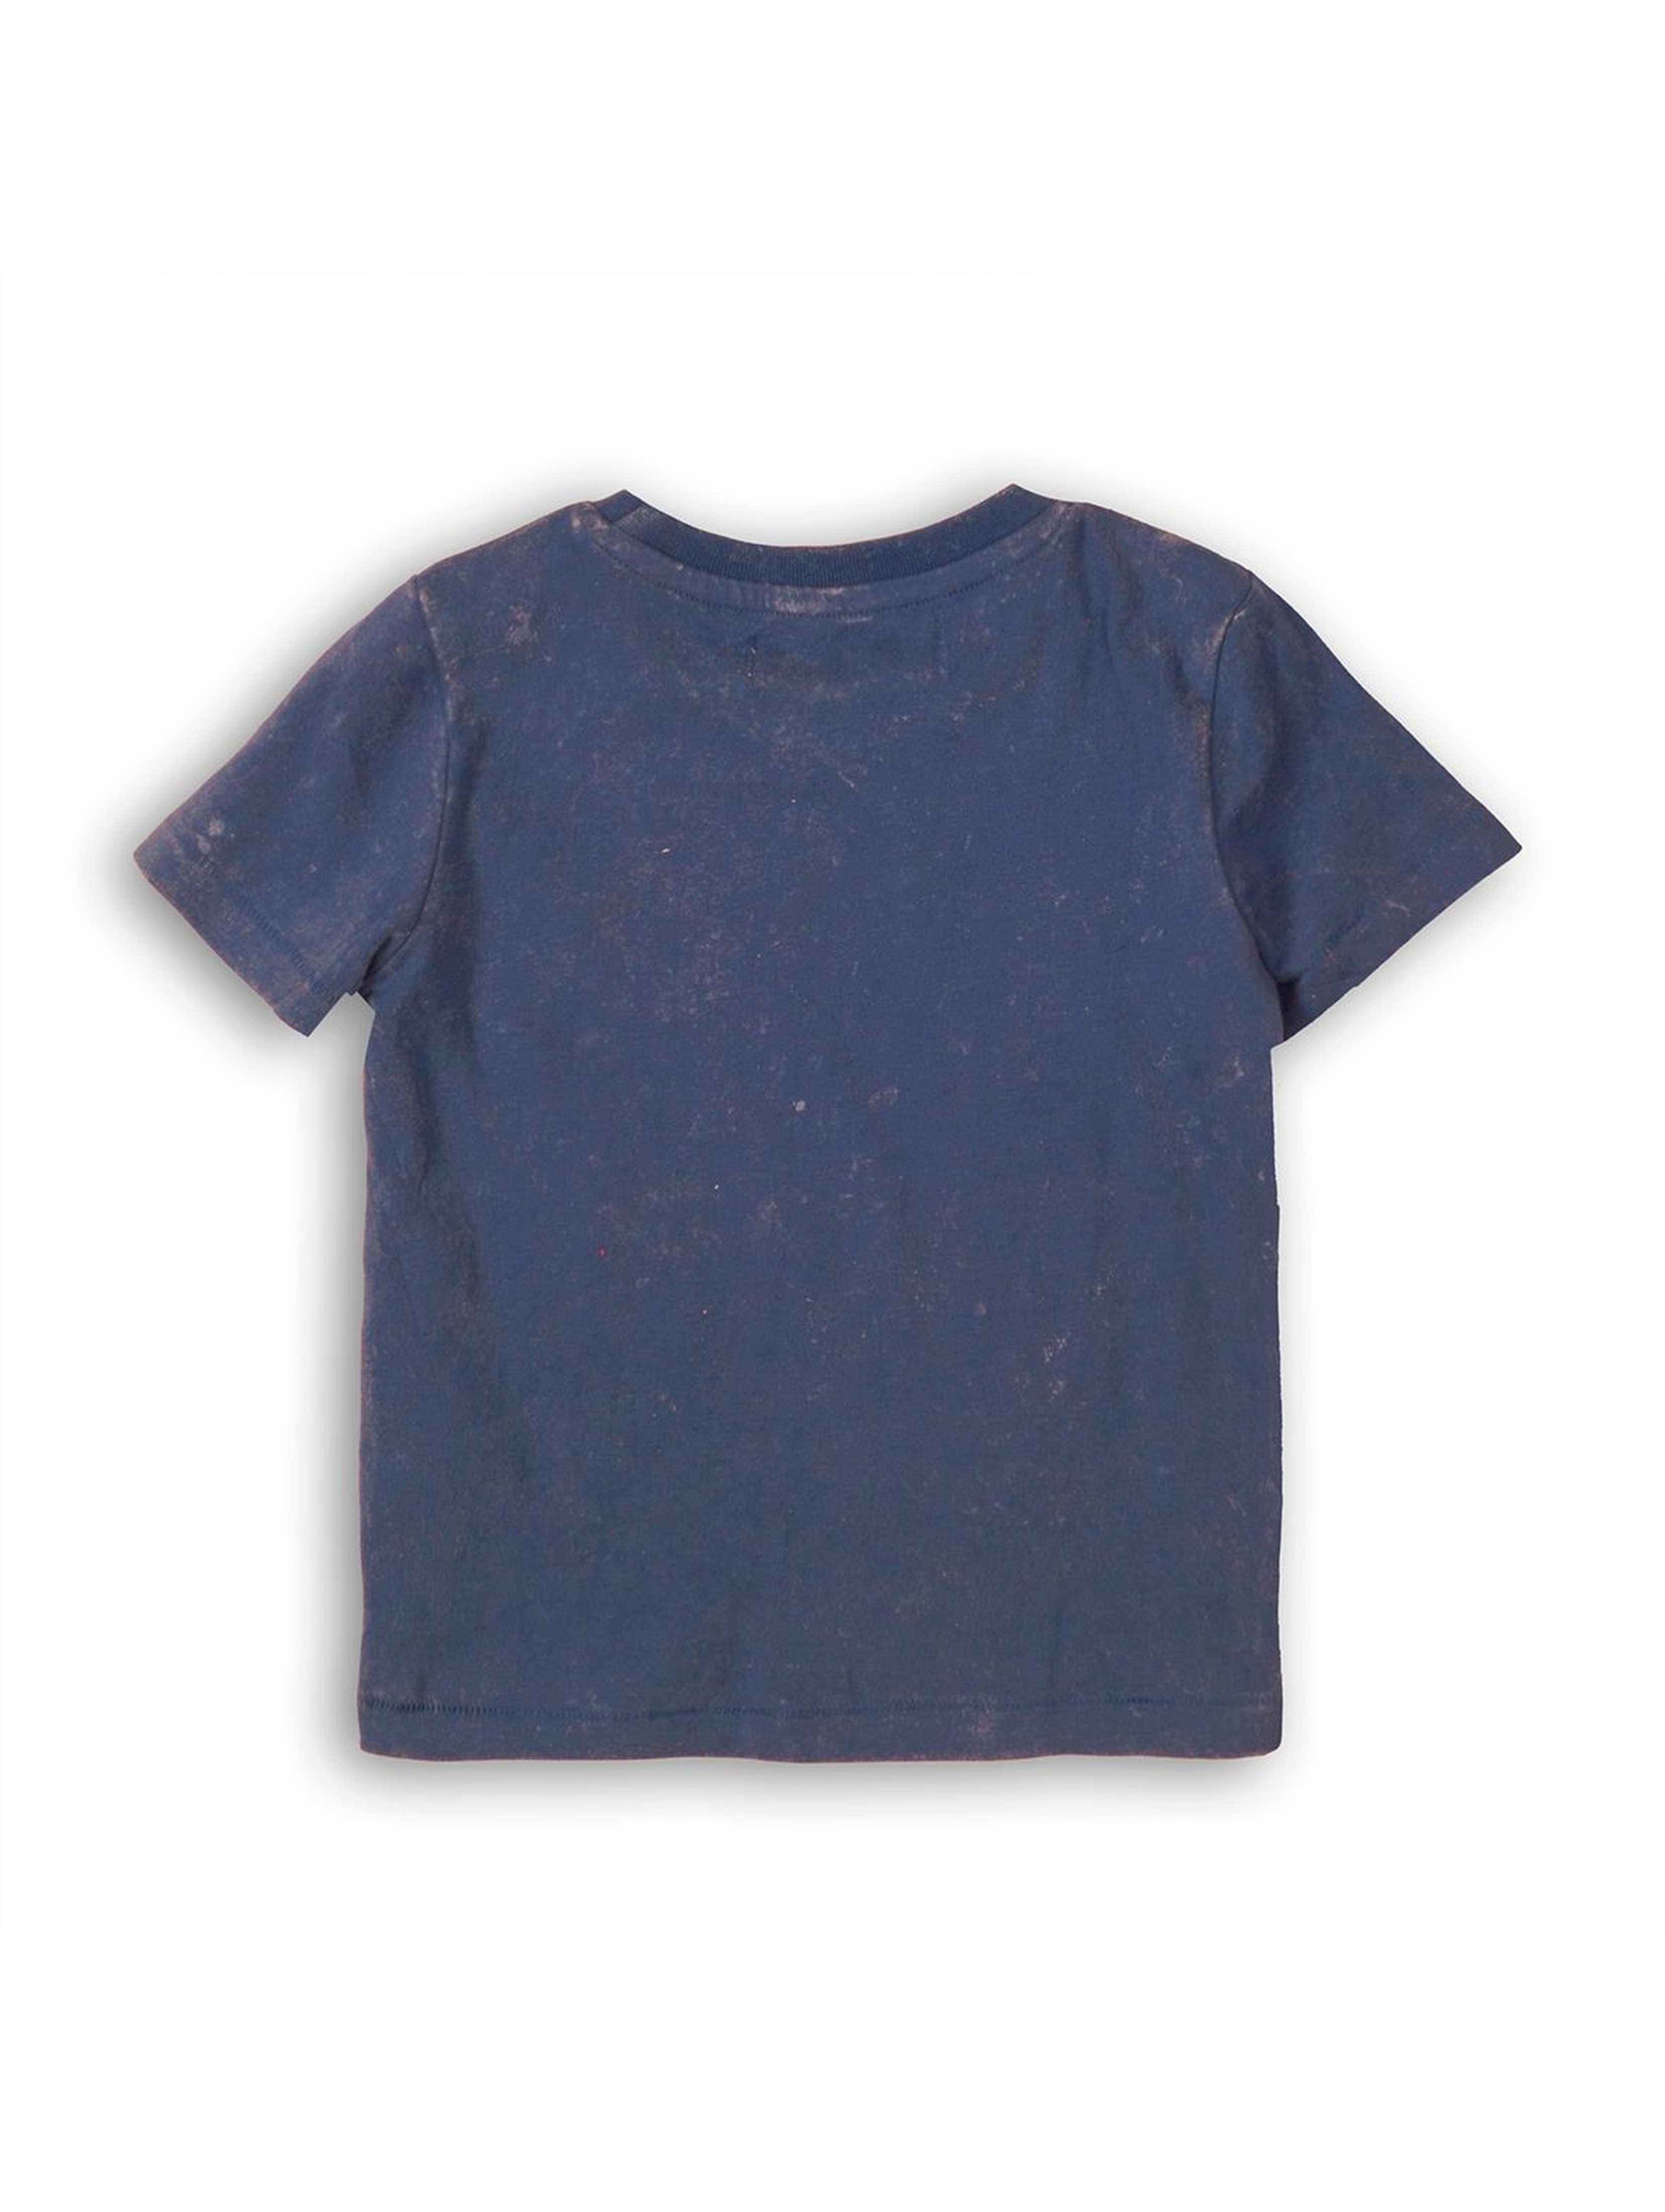 Bawełniany t-shirt chłopięcy z palmami - granatowy rozmiar 92/98